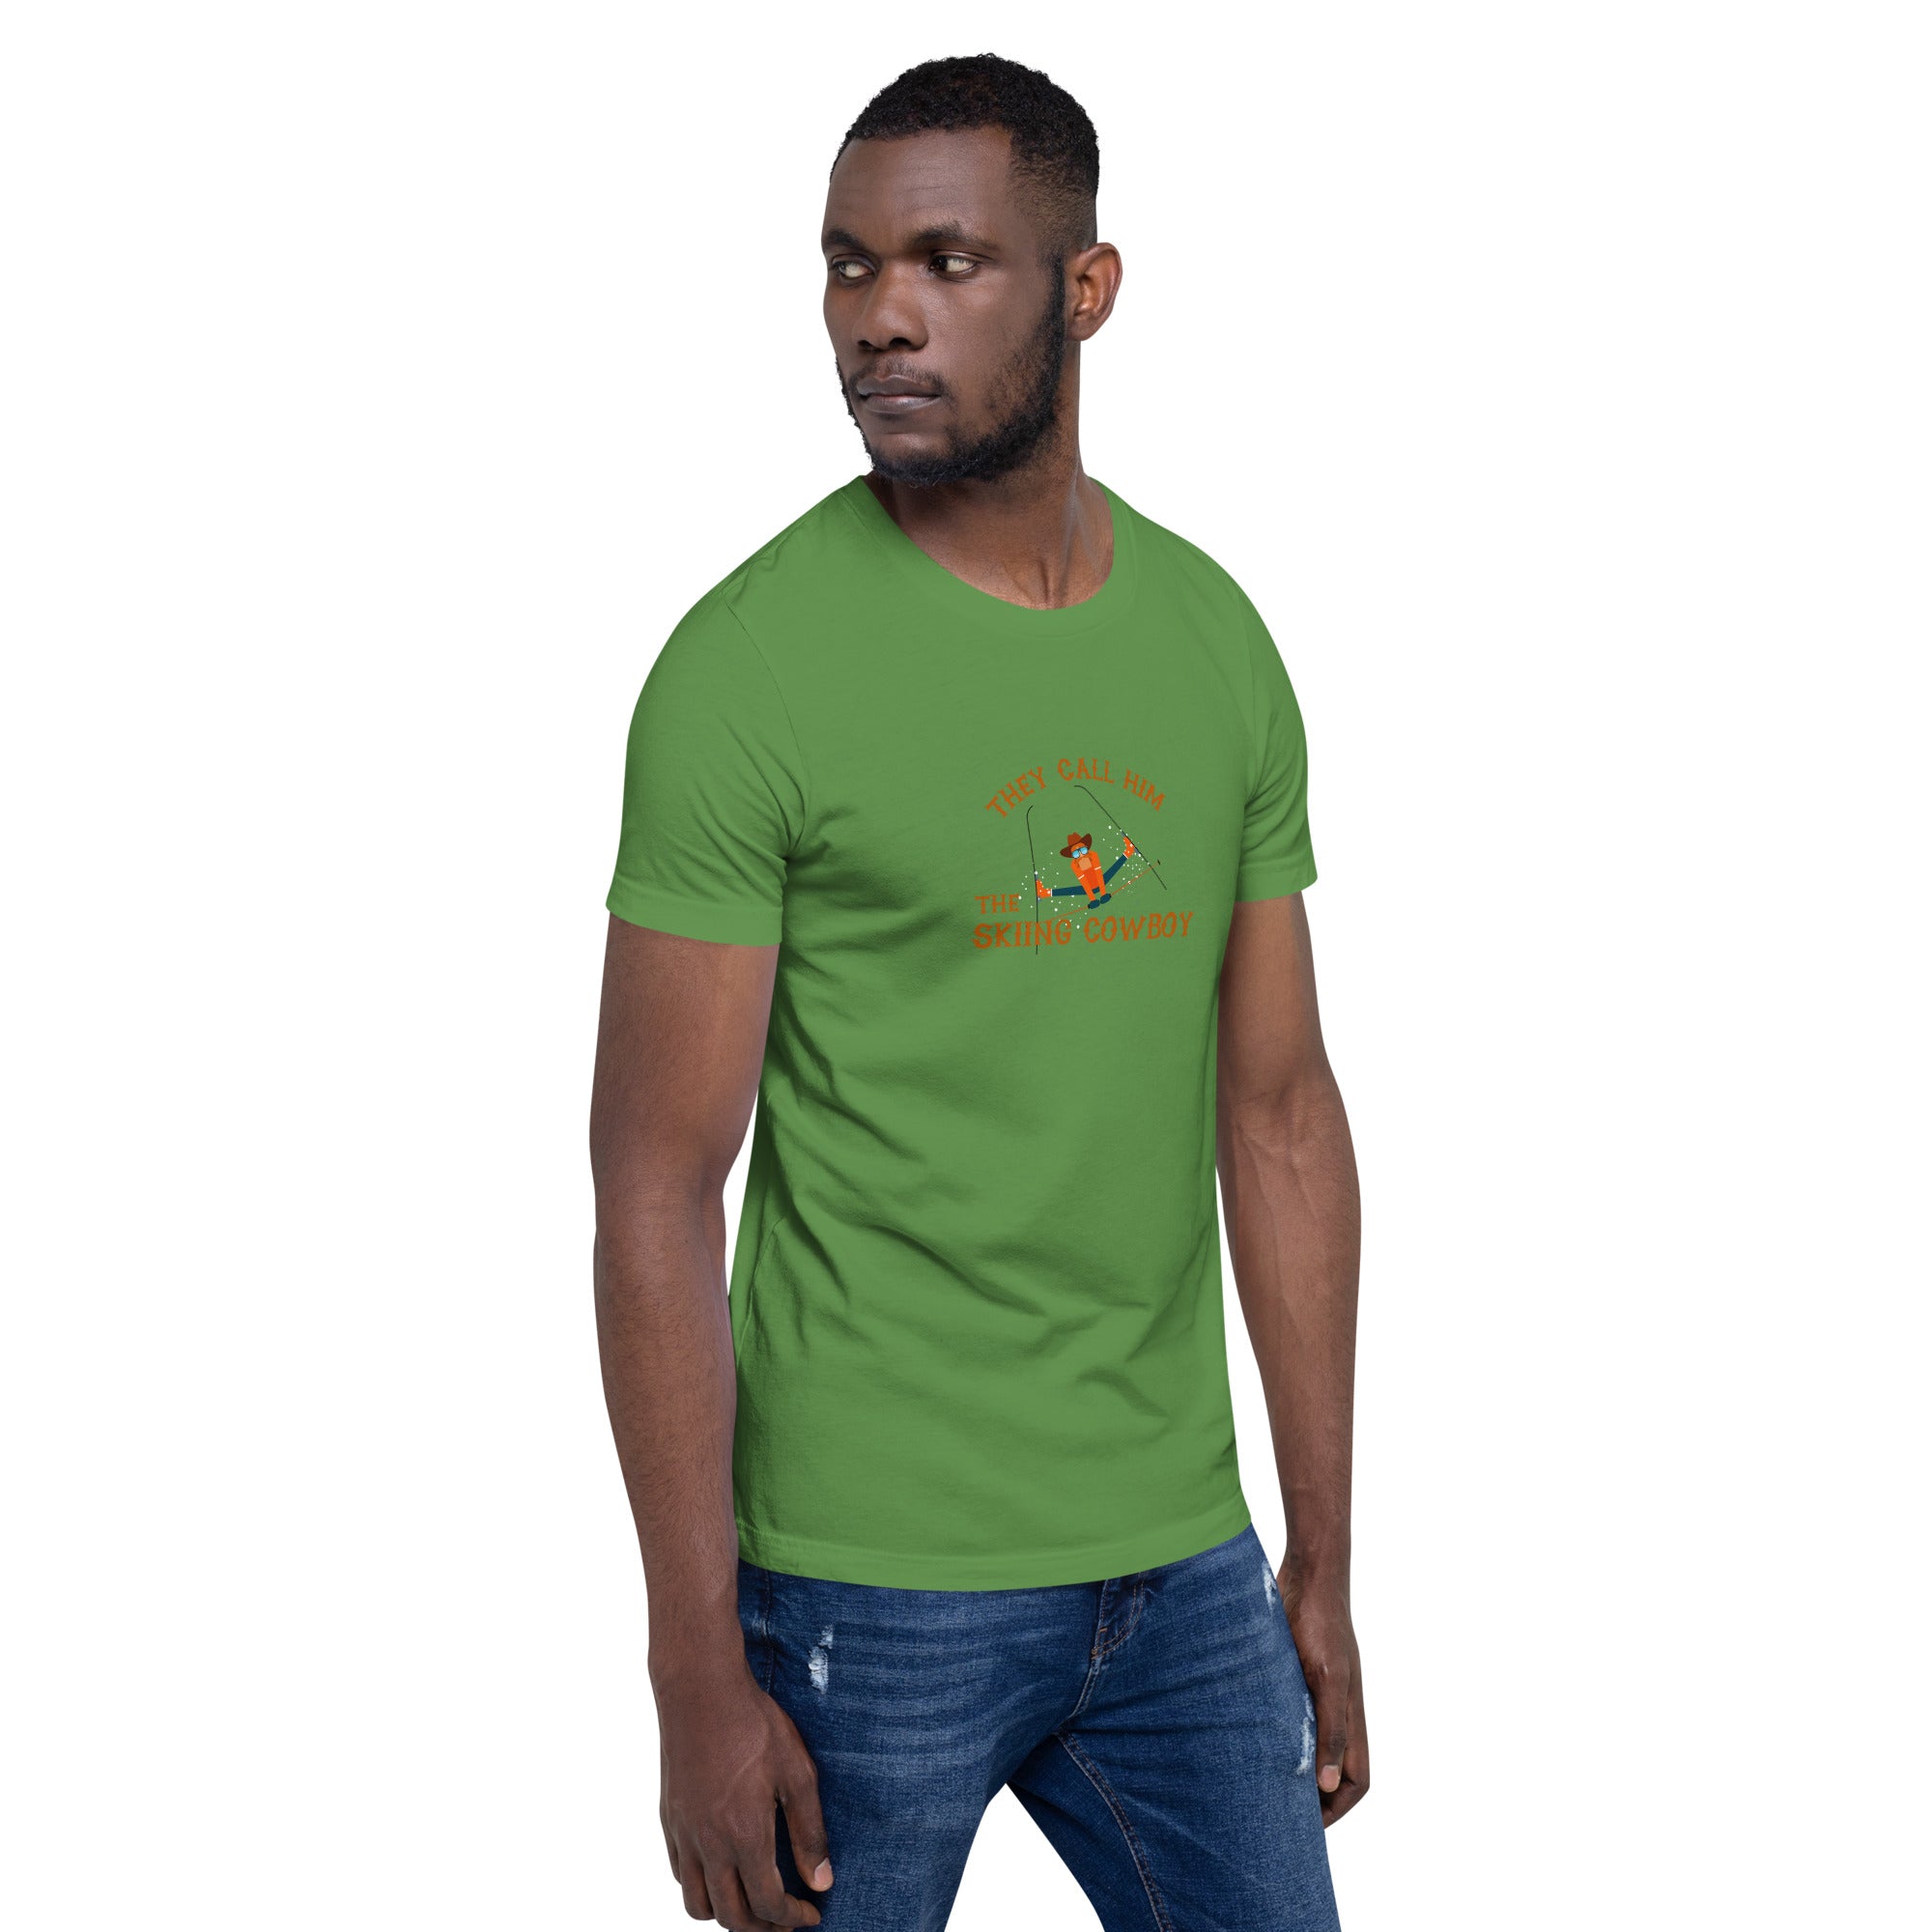 T-shirt en coton unisexe Hot Dogger sur couleurs foncées